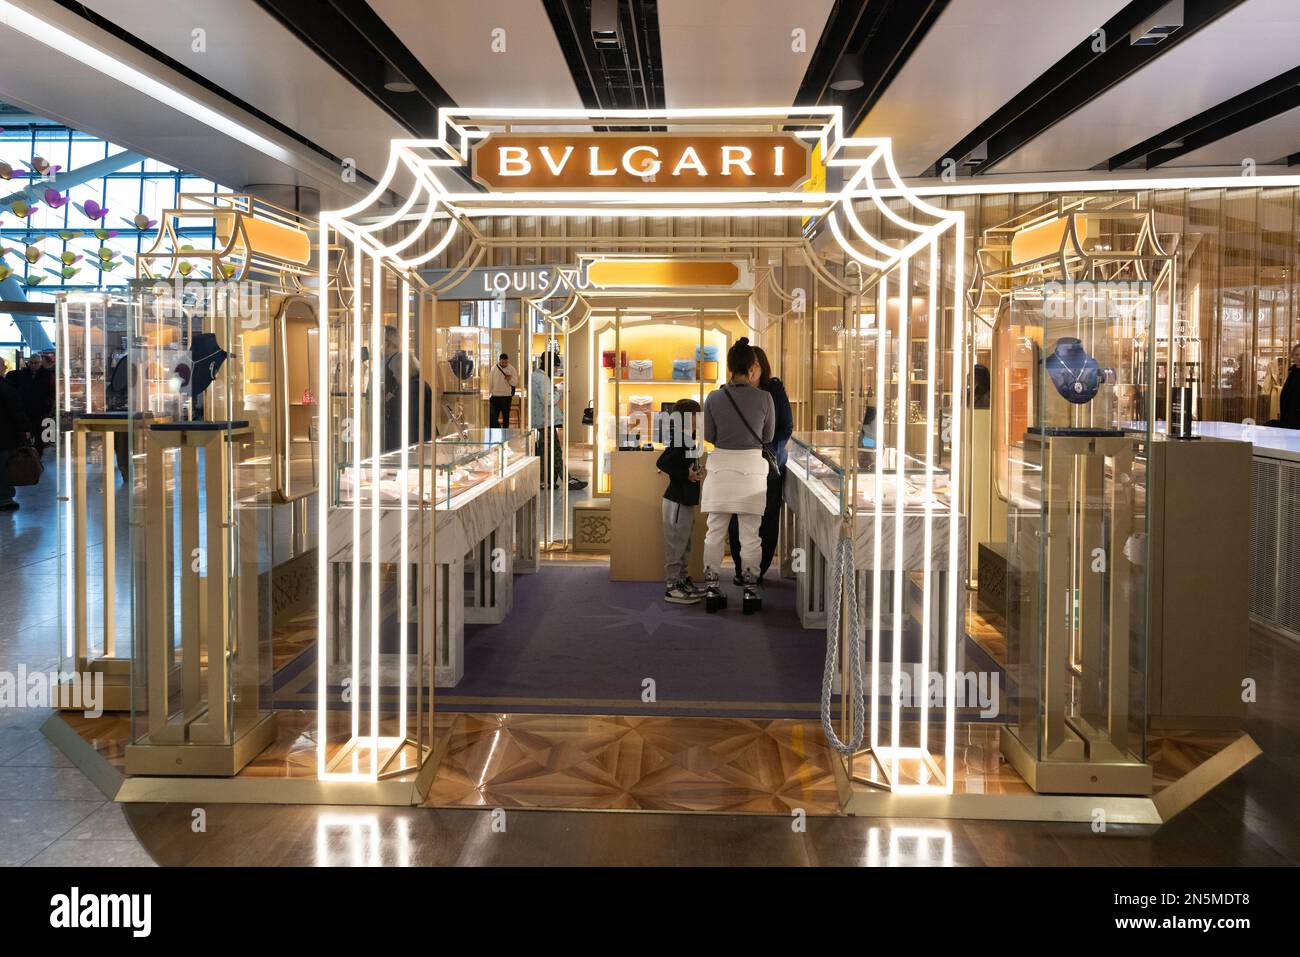 Magasin Bulgari Royaume-Uni; les gens magasinent dans le magasin Bvlgari, terminal 5 de l'aéroport de Heathrow, Londres Royaume-Uni Banque D'Images